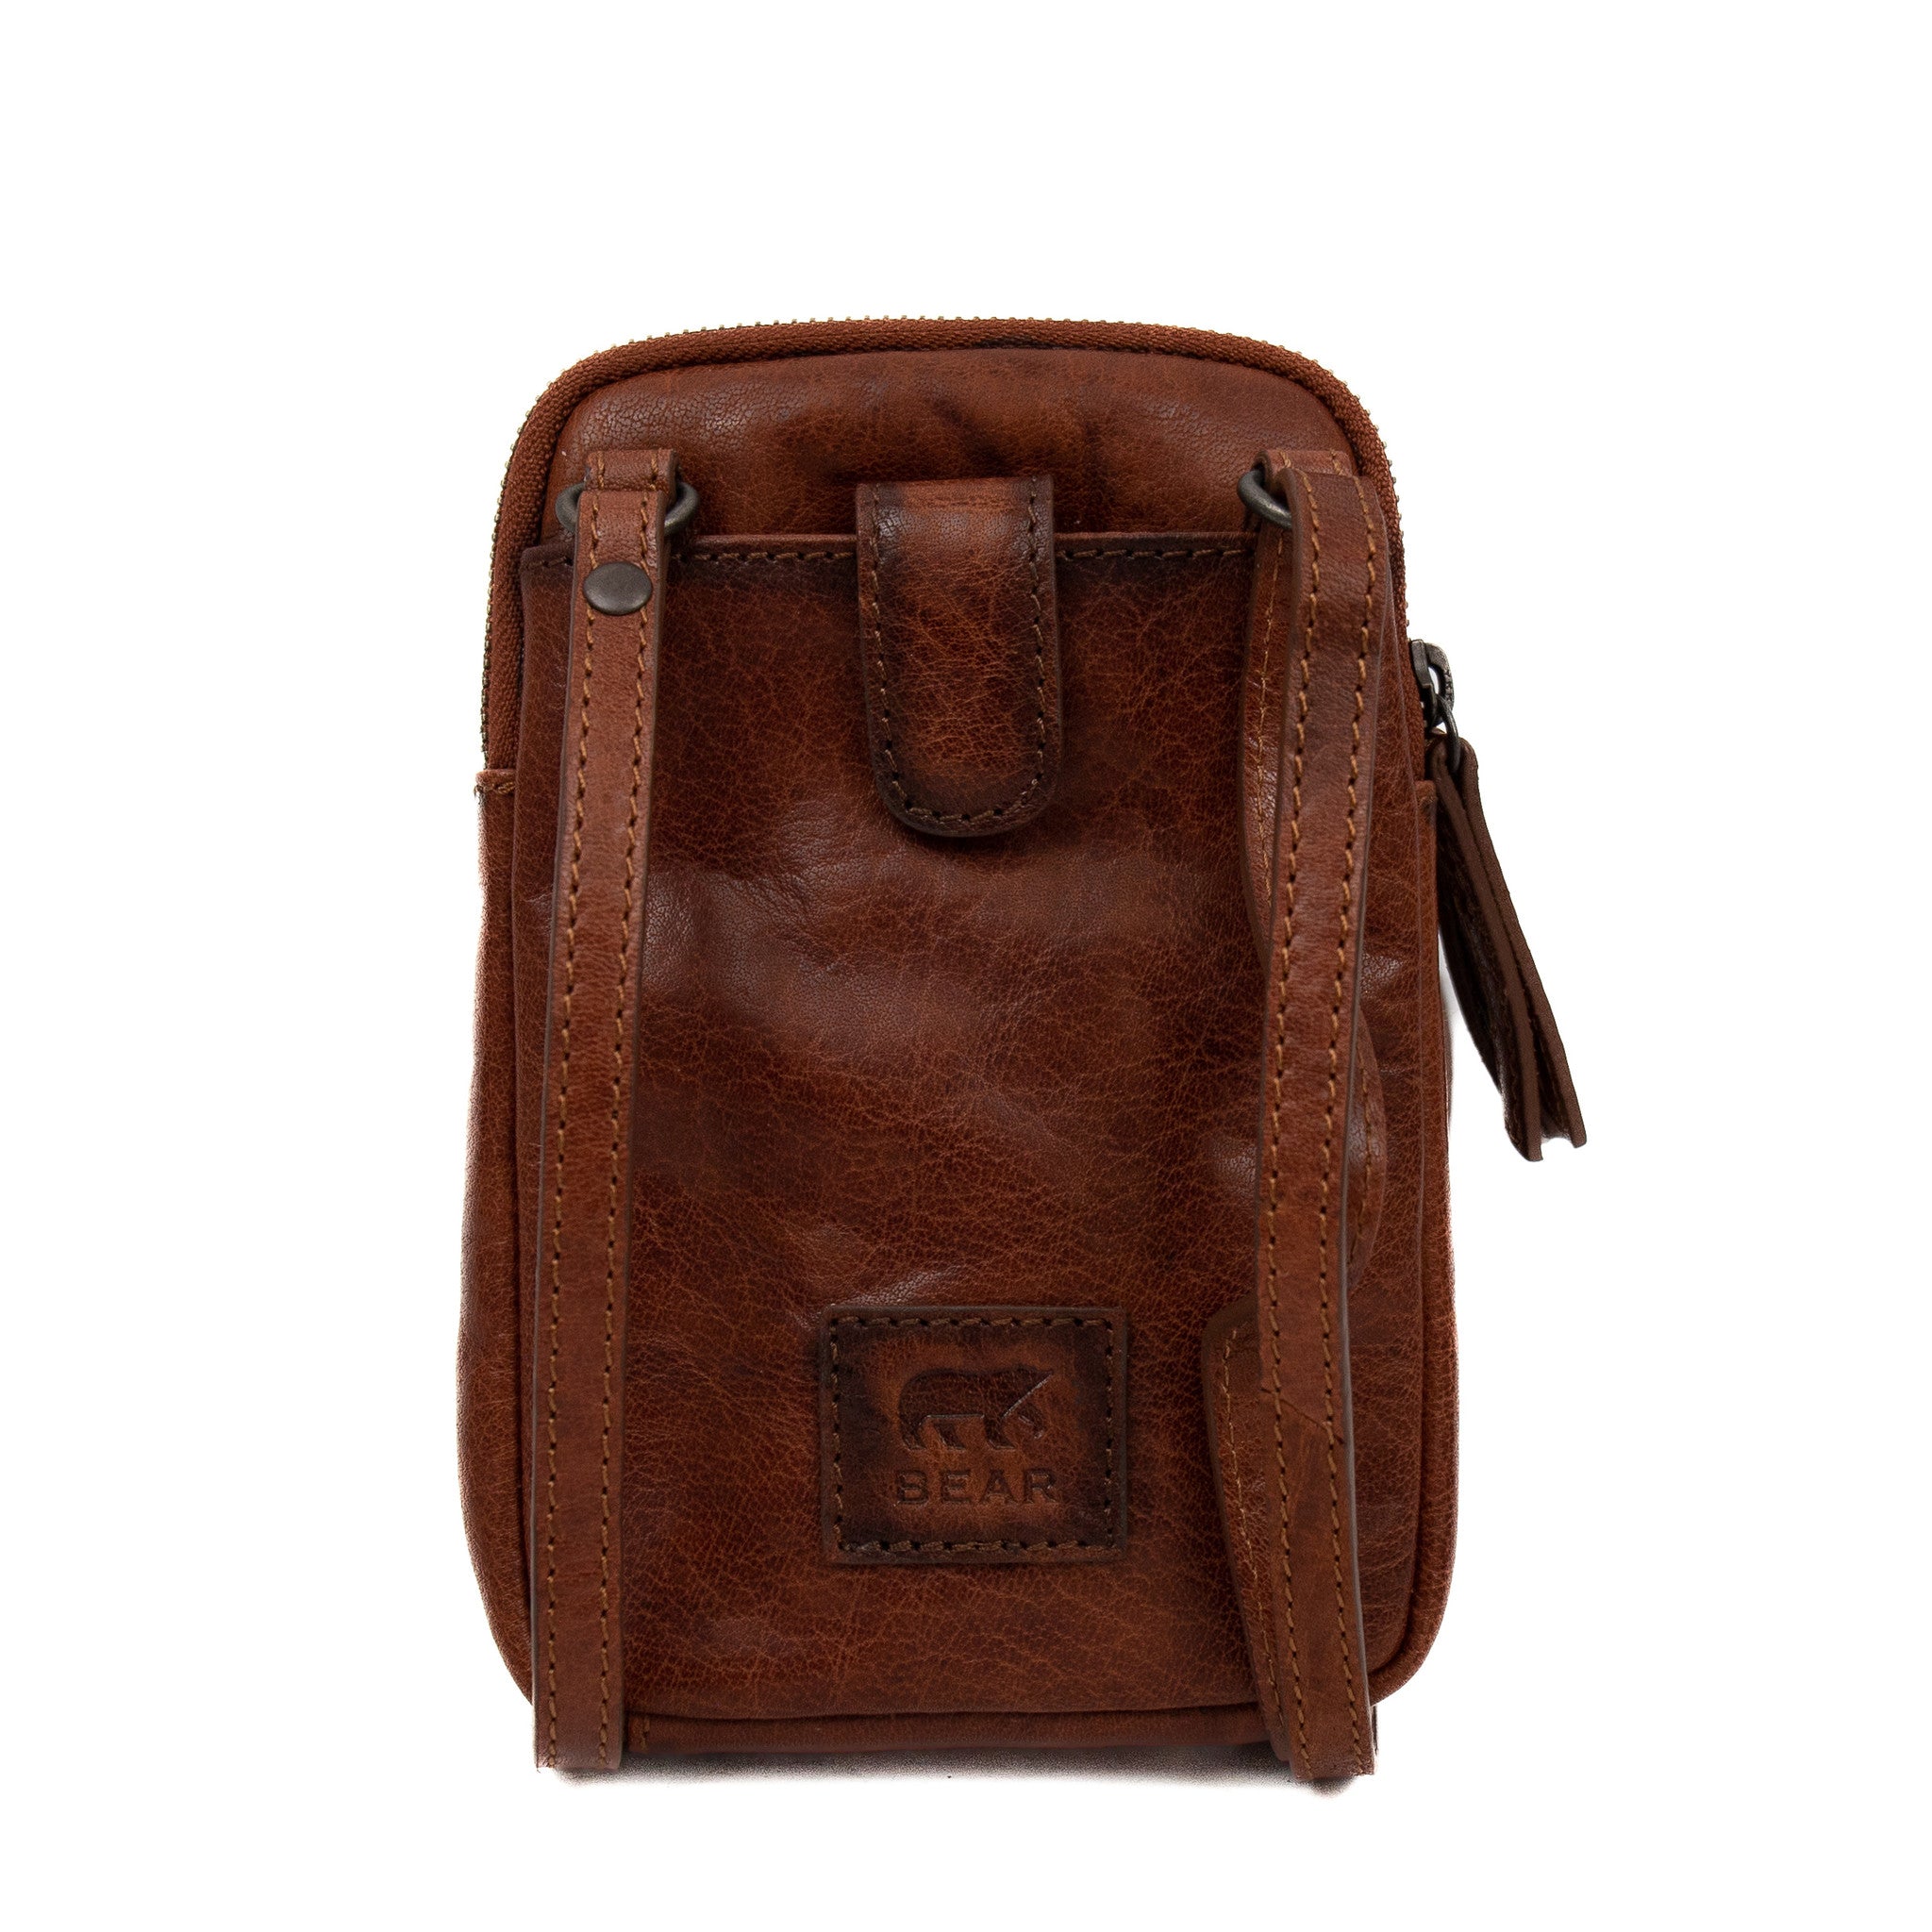 Shoulder bag 'Mees' cognac - AD 43107